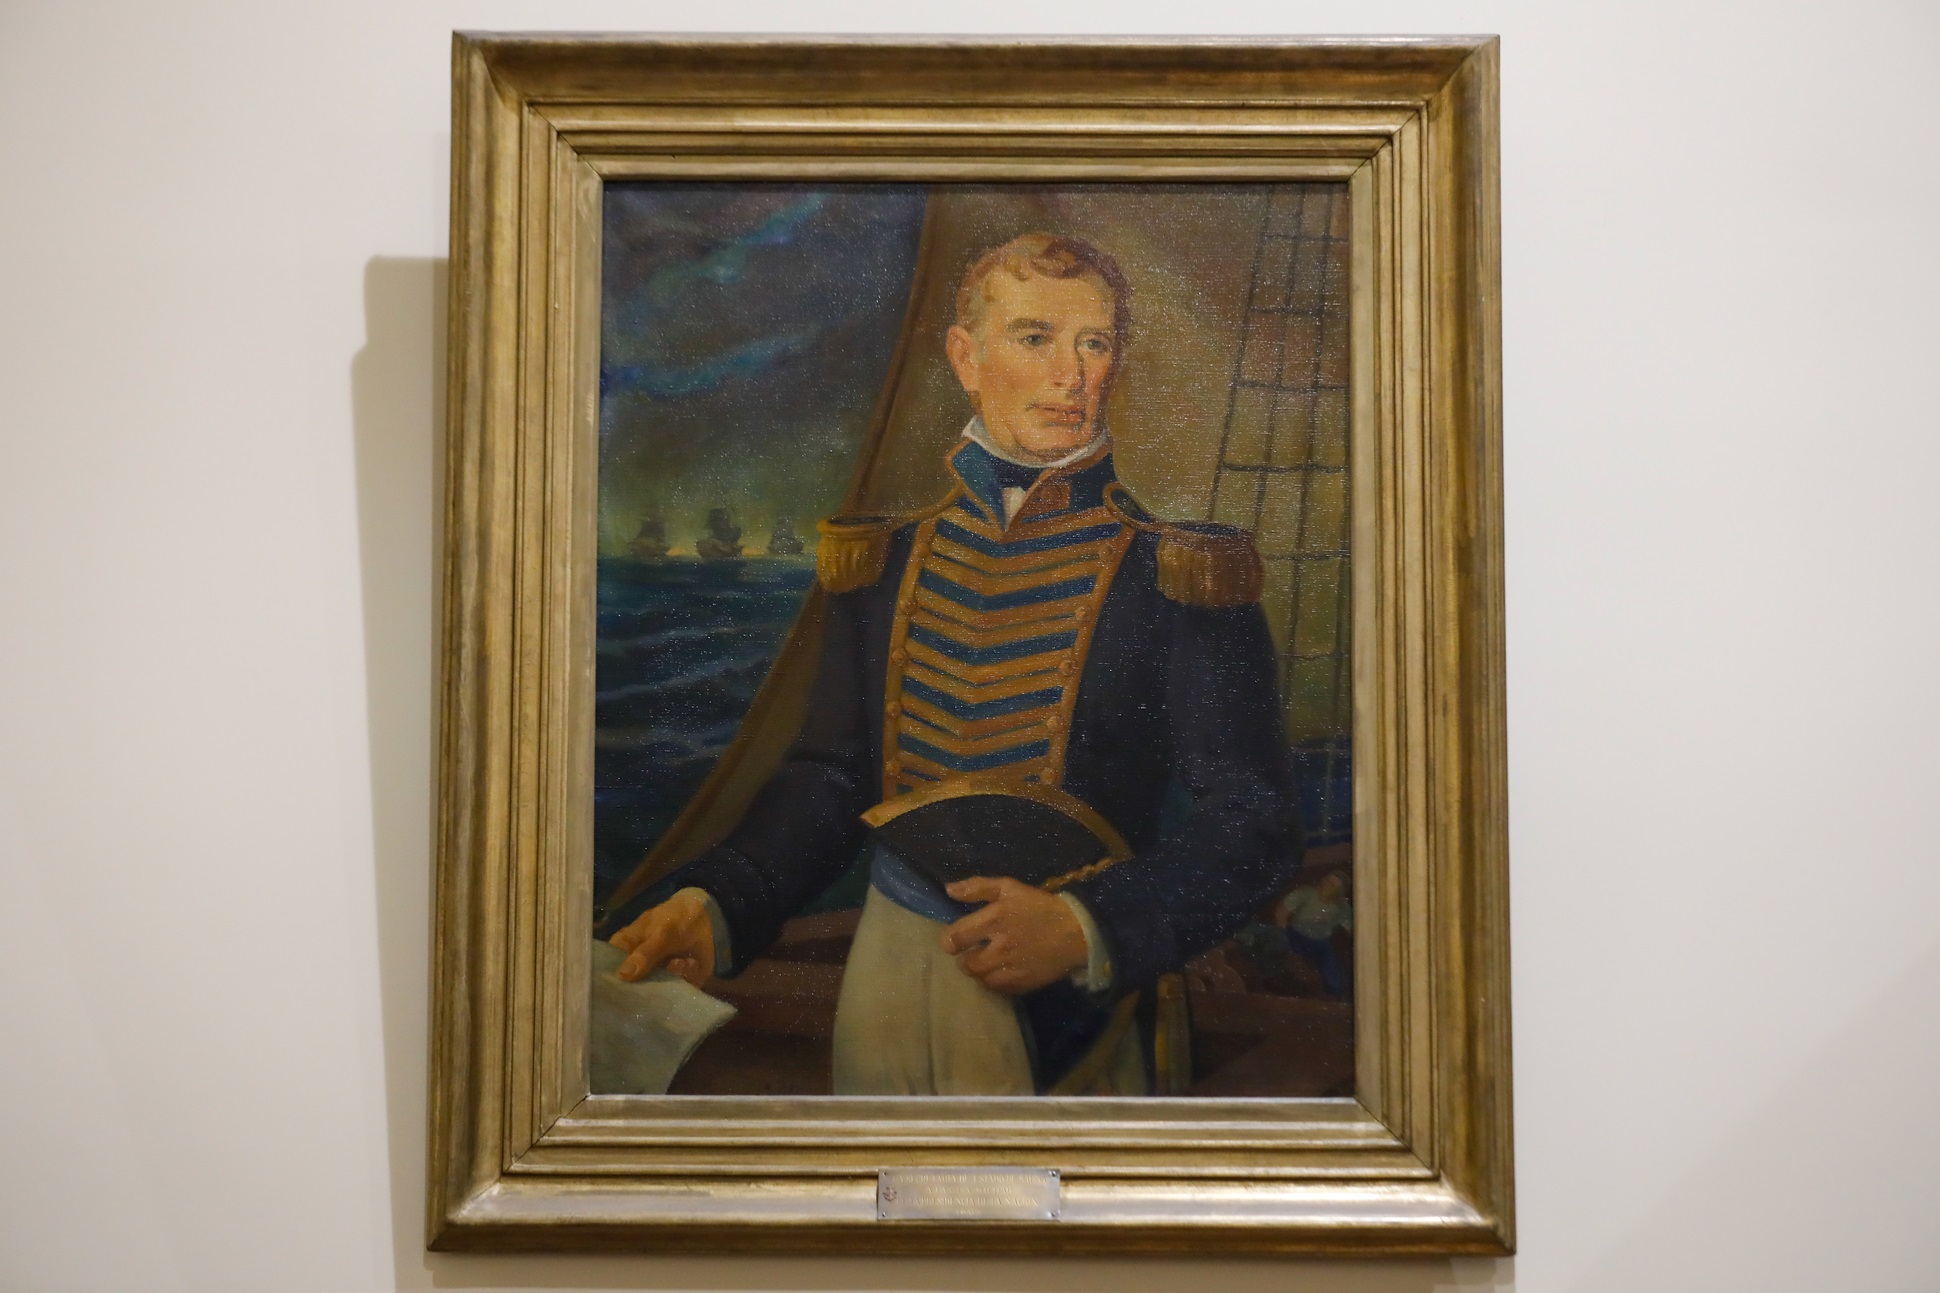 A 167 años del fallecimiento de Guillermo Brown: El Almirante inmortal de nuestra Armada Argentina